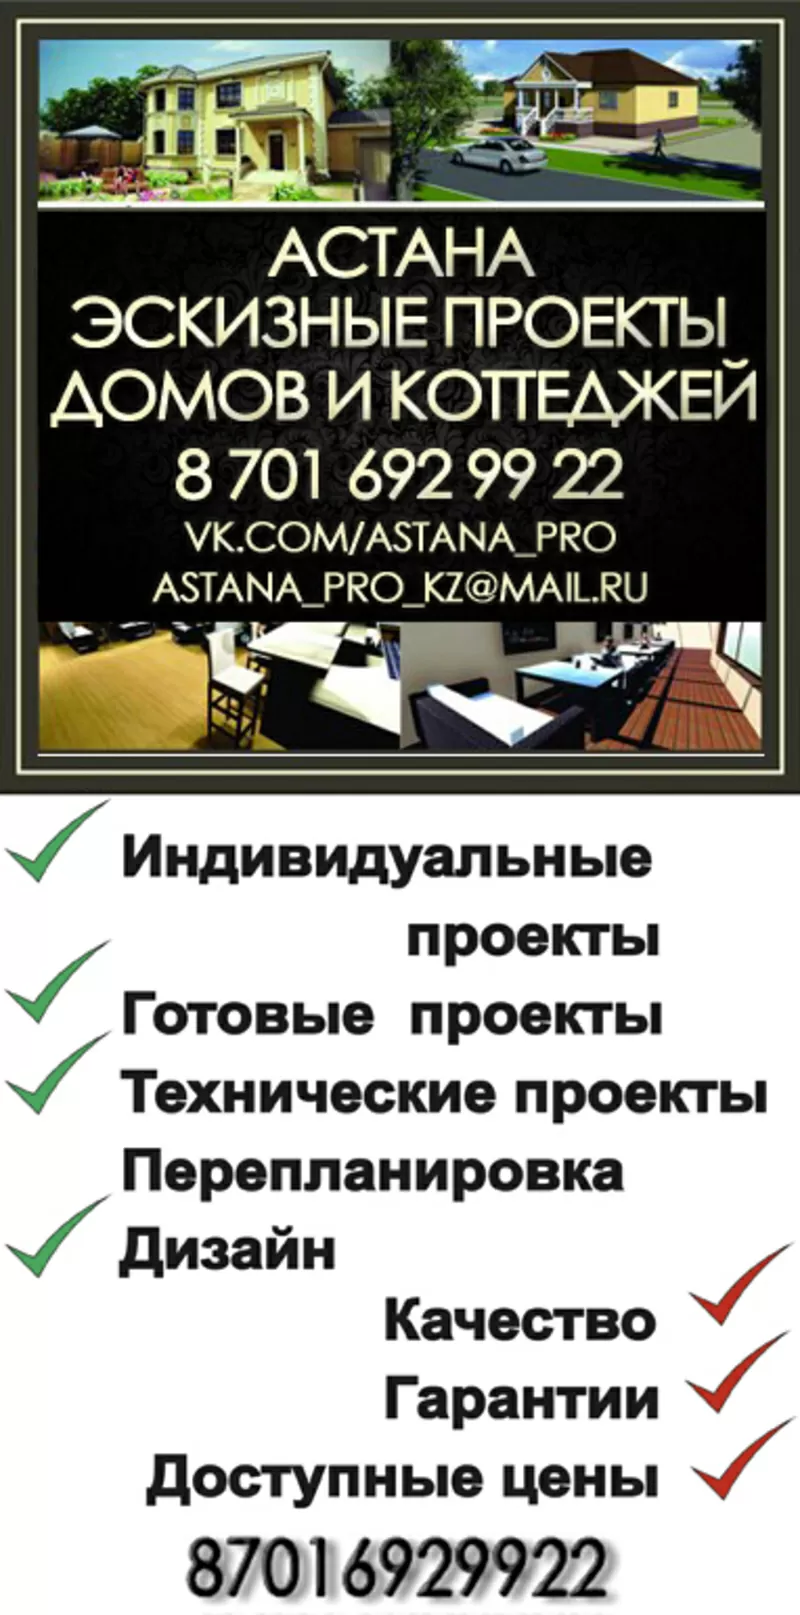 Эскизные проекты коттеджей, домов и т.д(лицензия)недорого, быстро!Астана 2